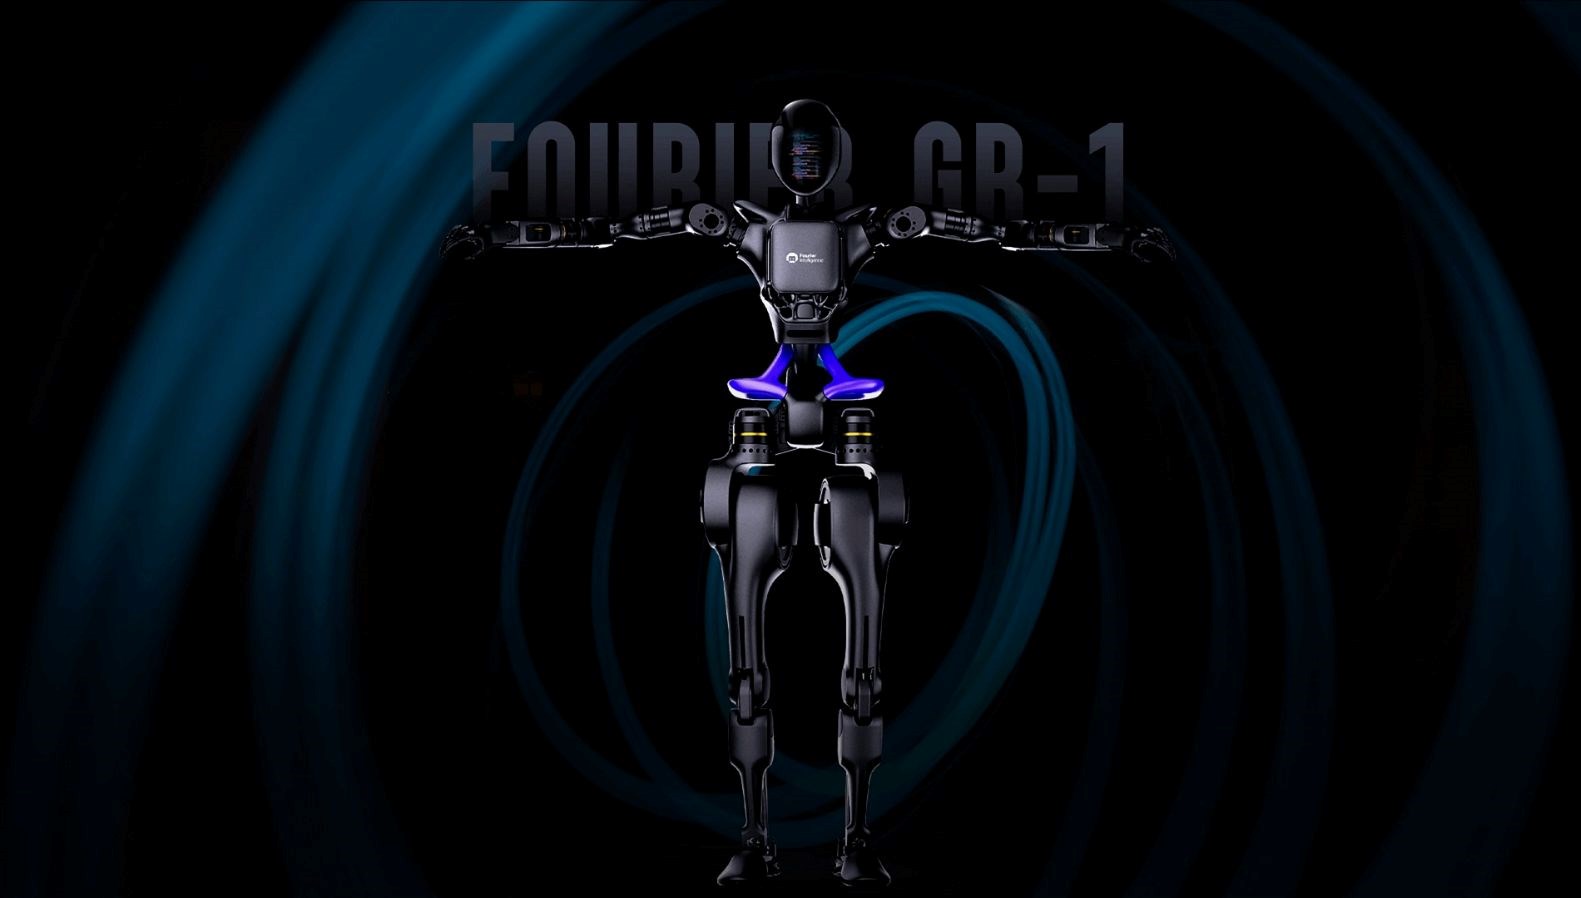 Çinli teknoloji şirketi Fourier, yapay zeka takviyeli insansı robot GR-1’i tanıttı